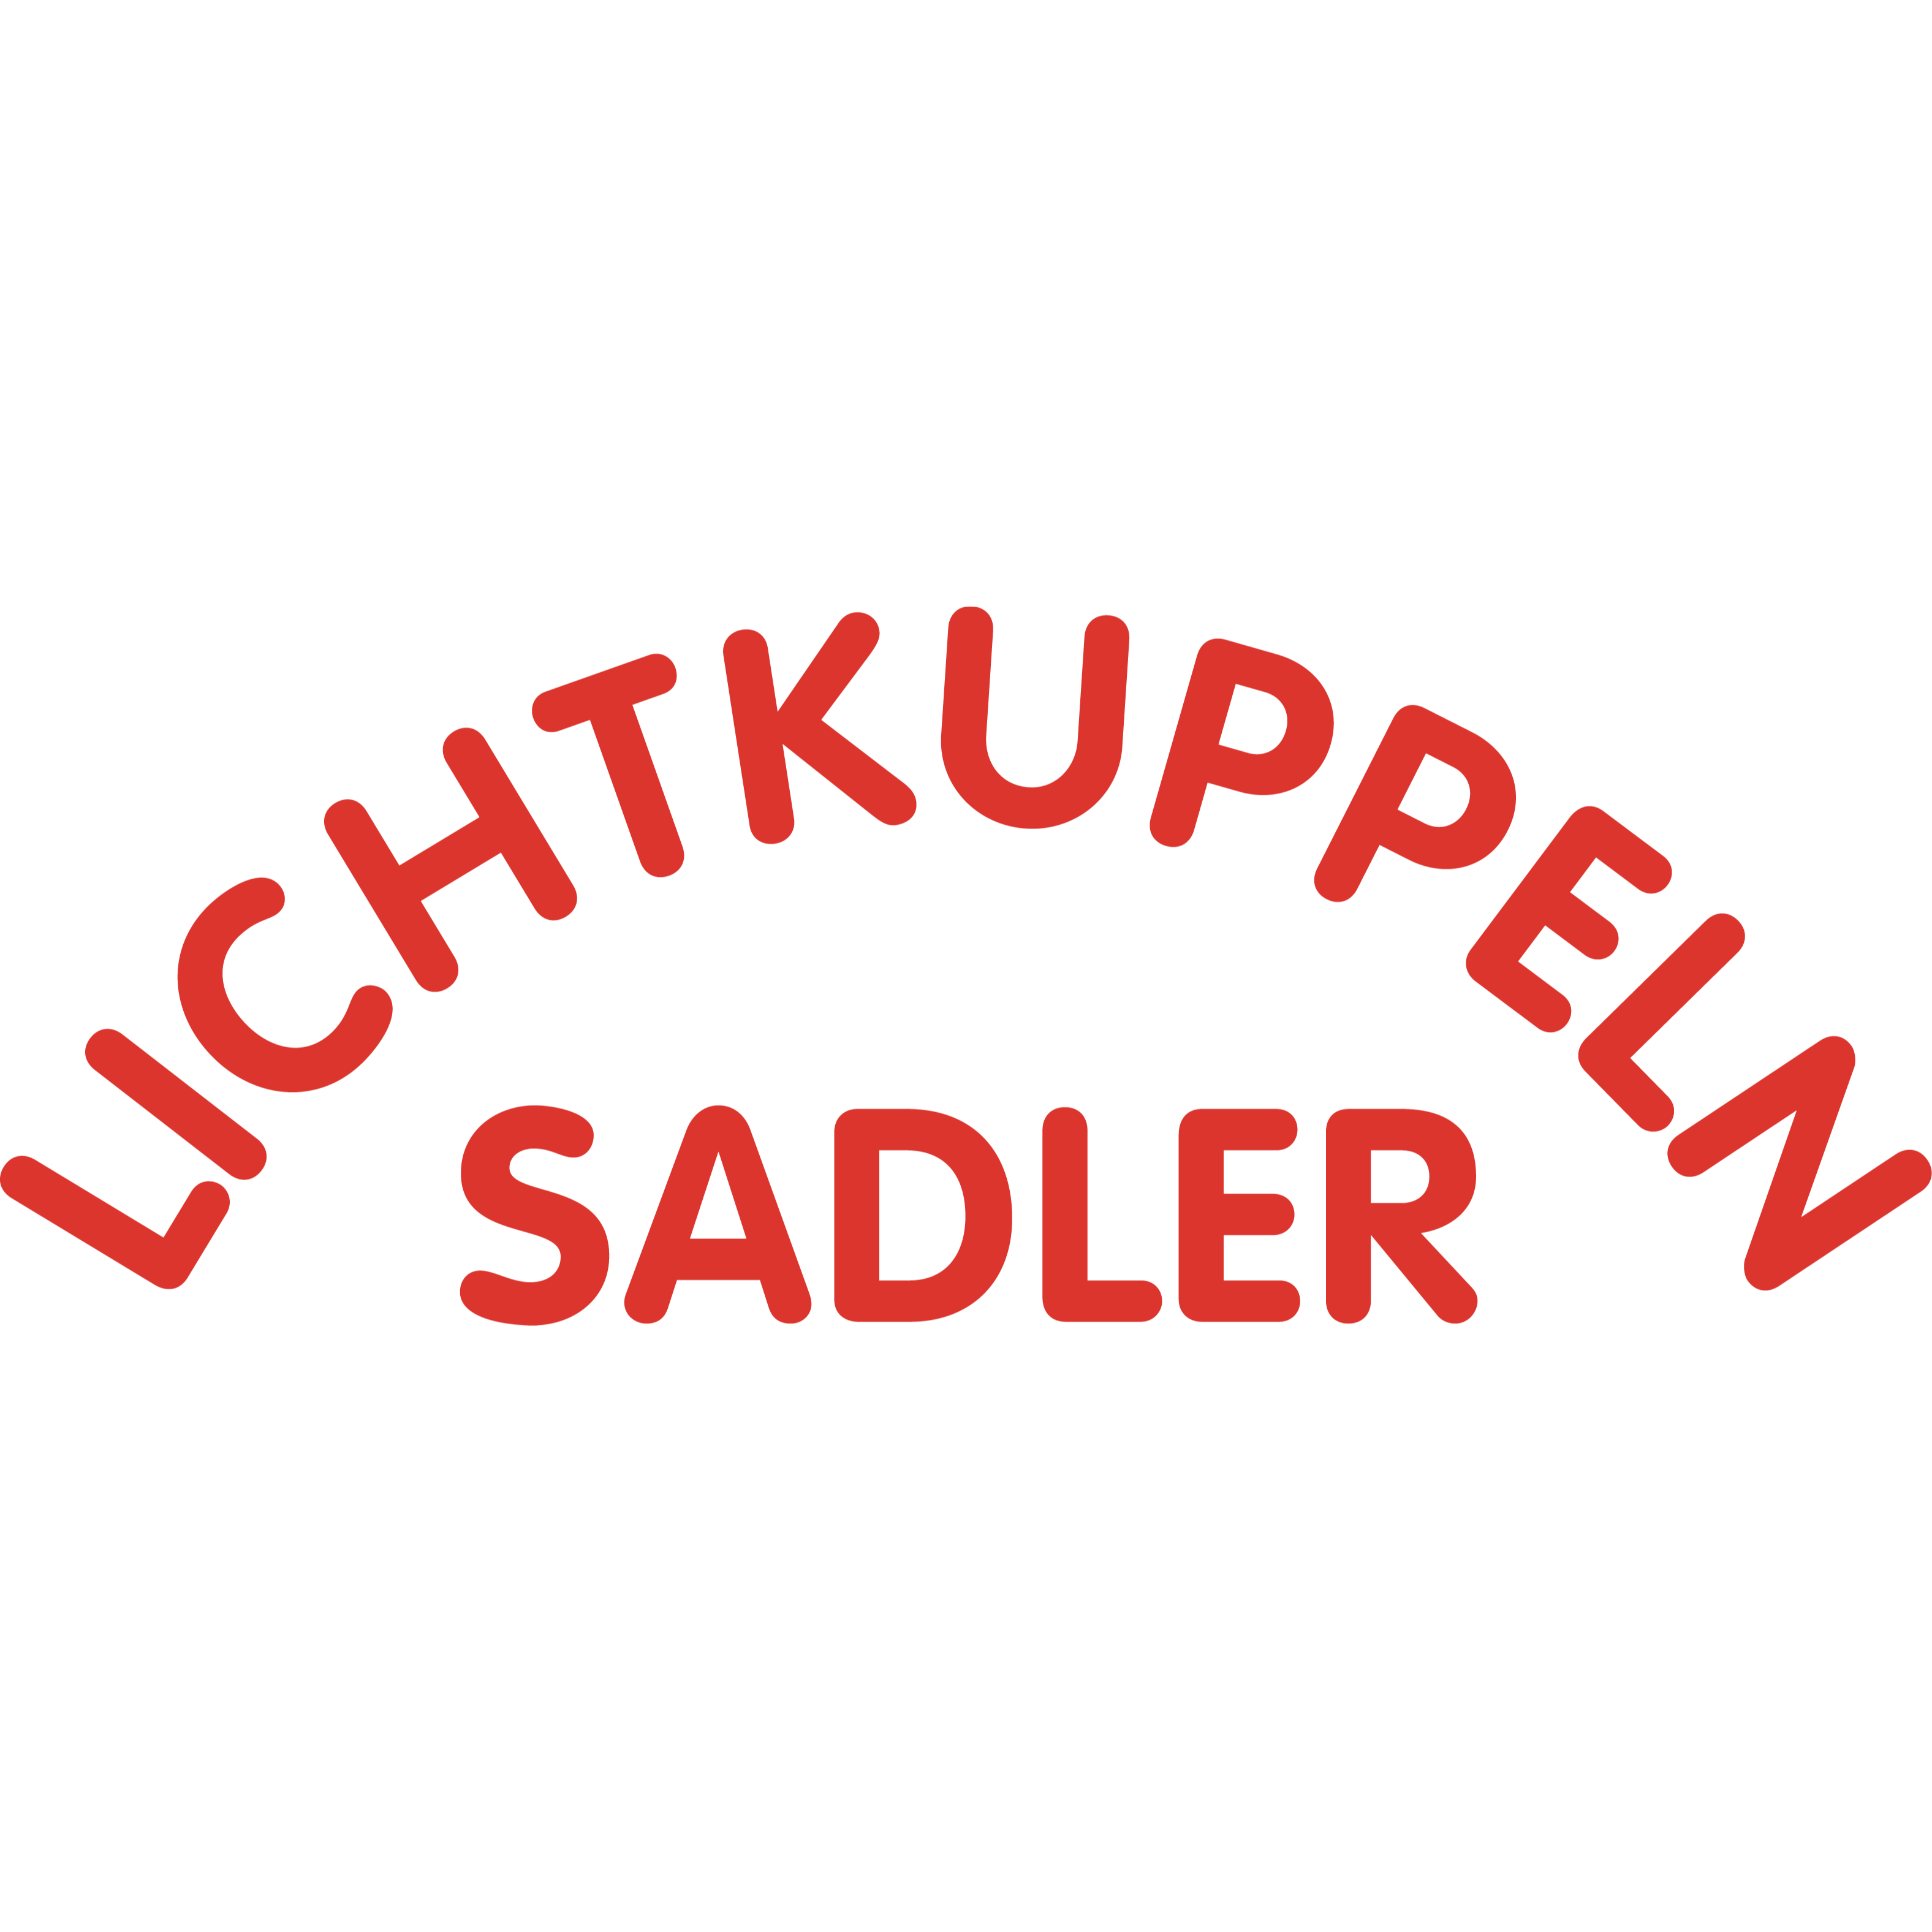 SADLER-LICHTKUPPELN KunststoffverarbeitungsgmbH. Logo